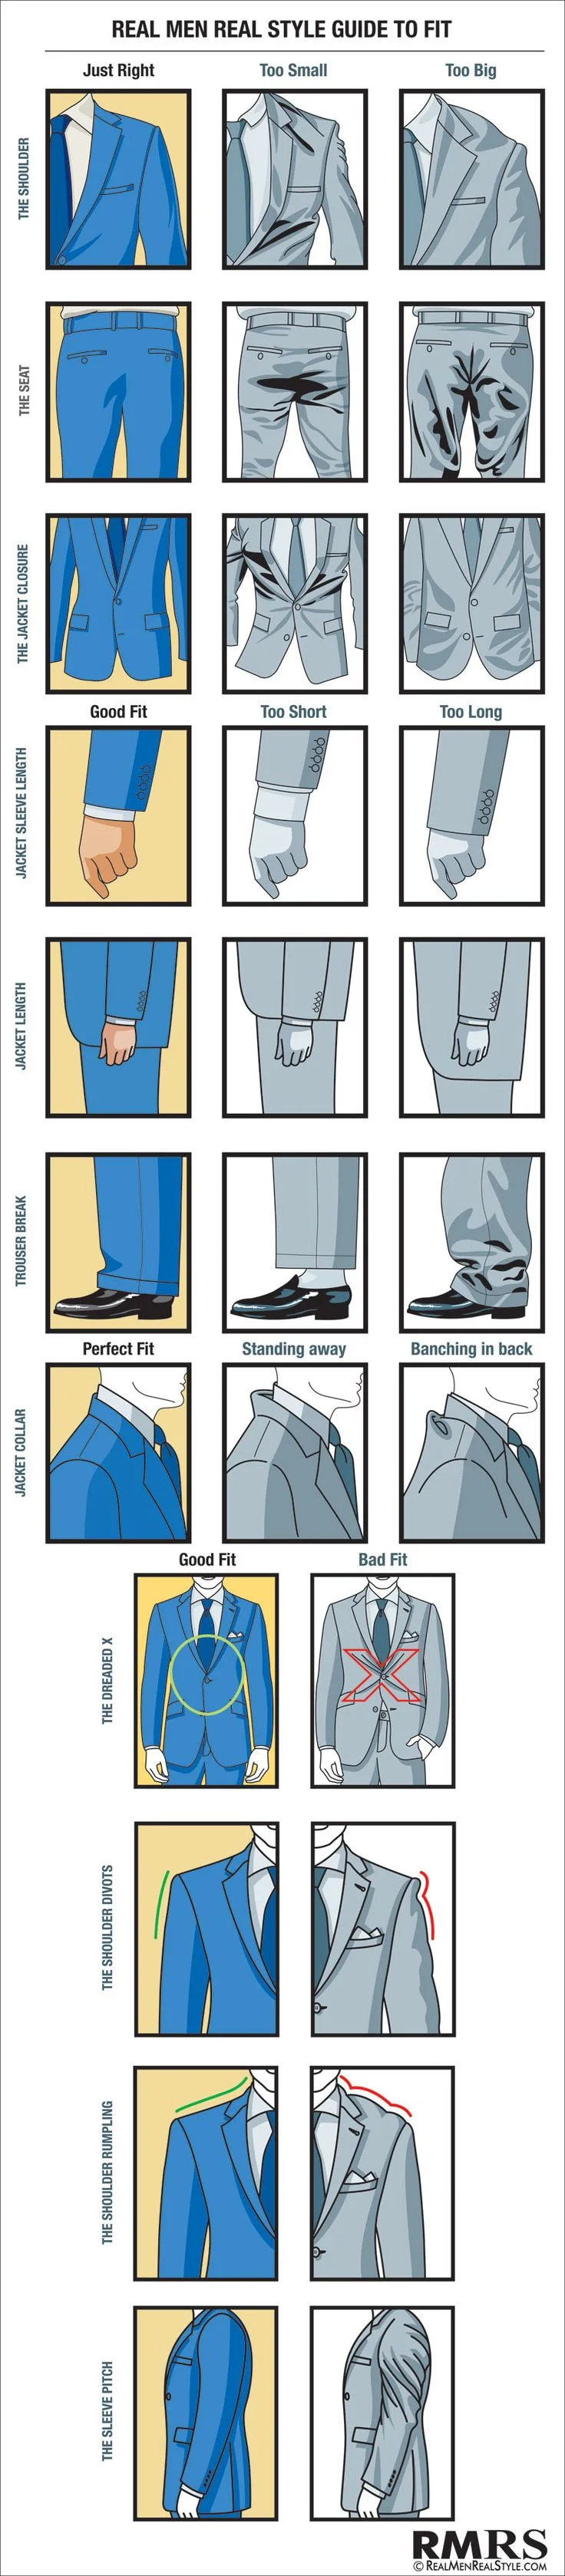 how should a men's suit fit?